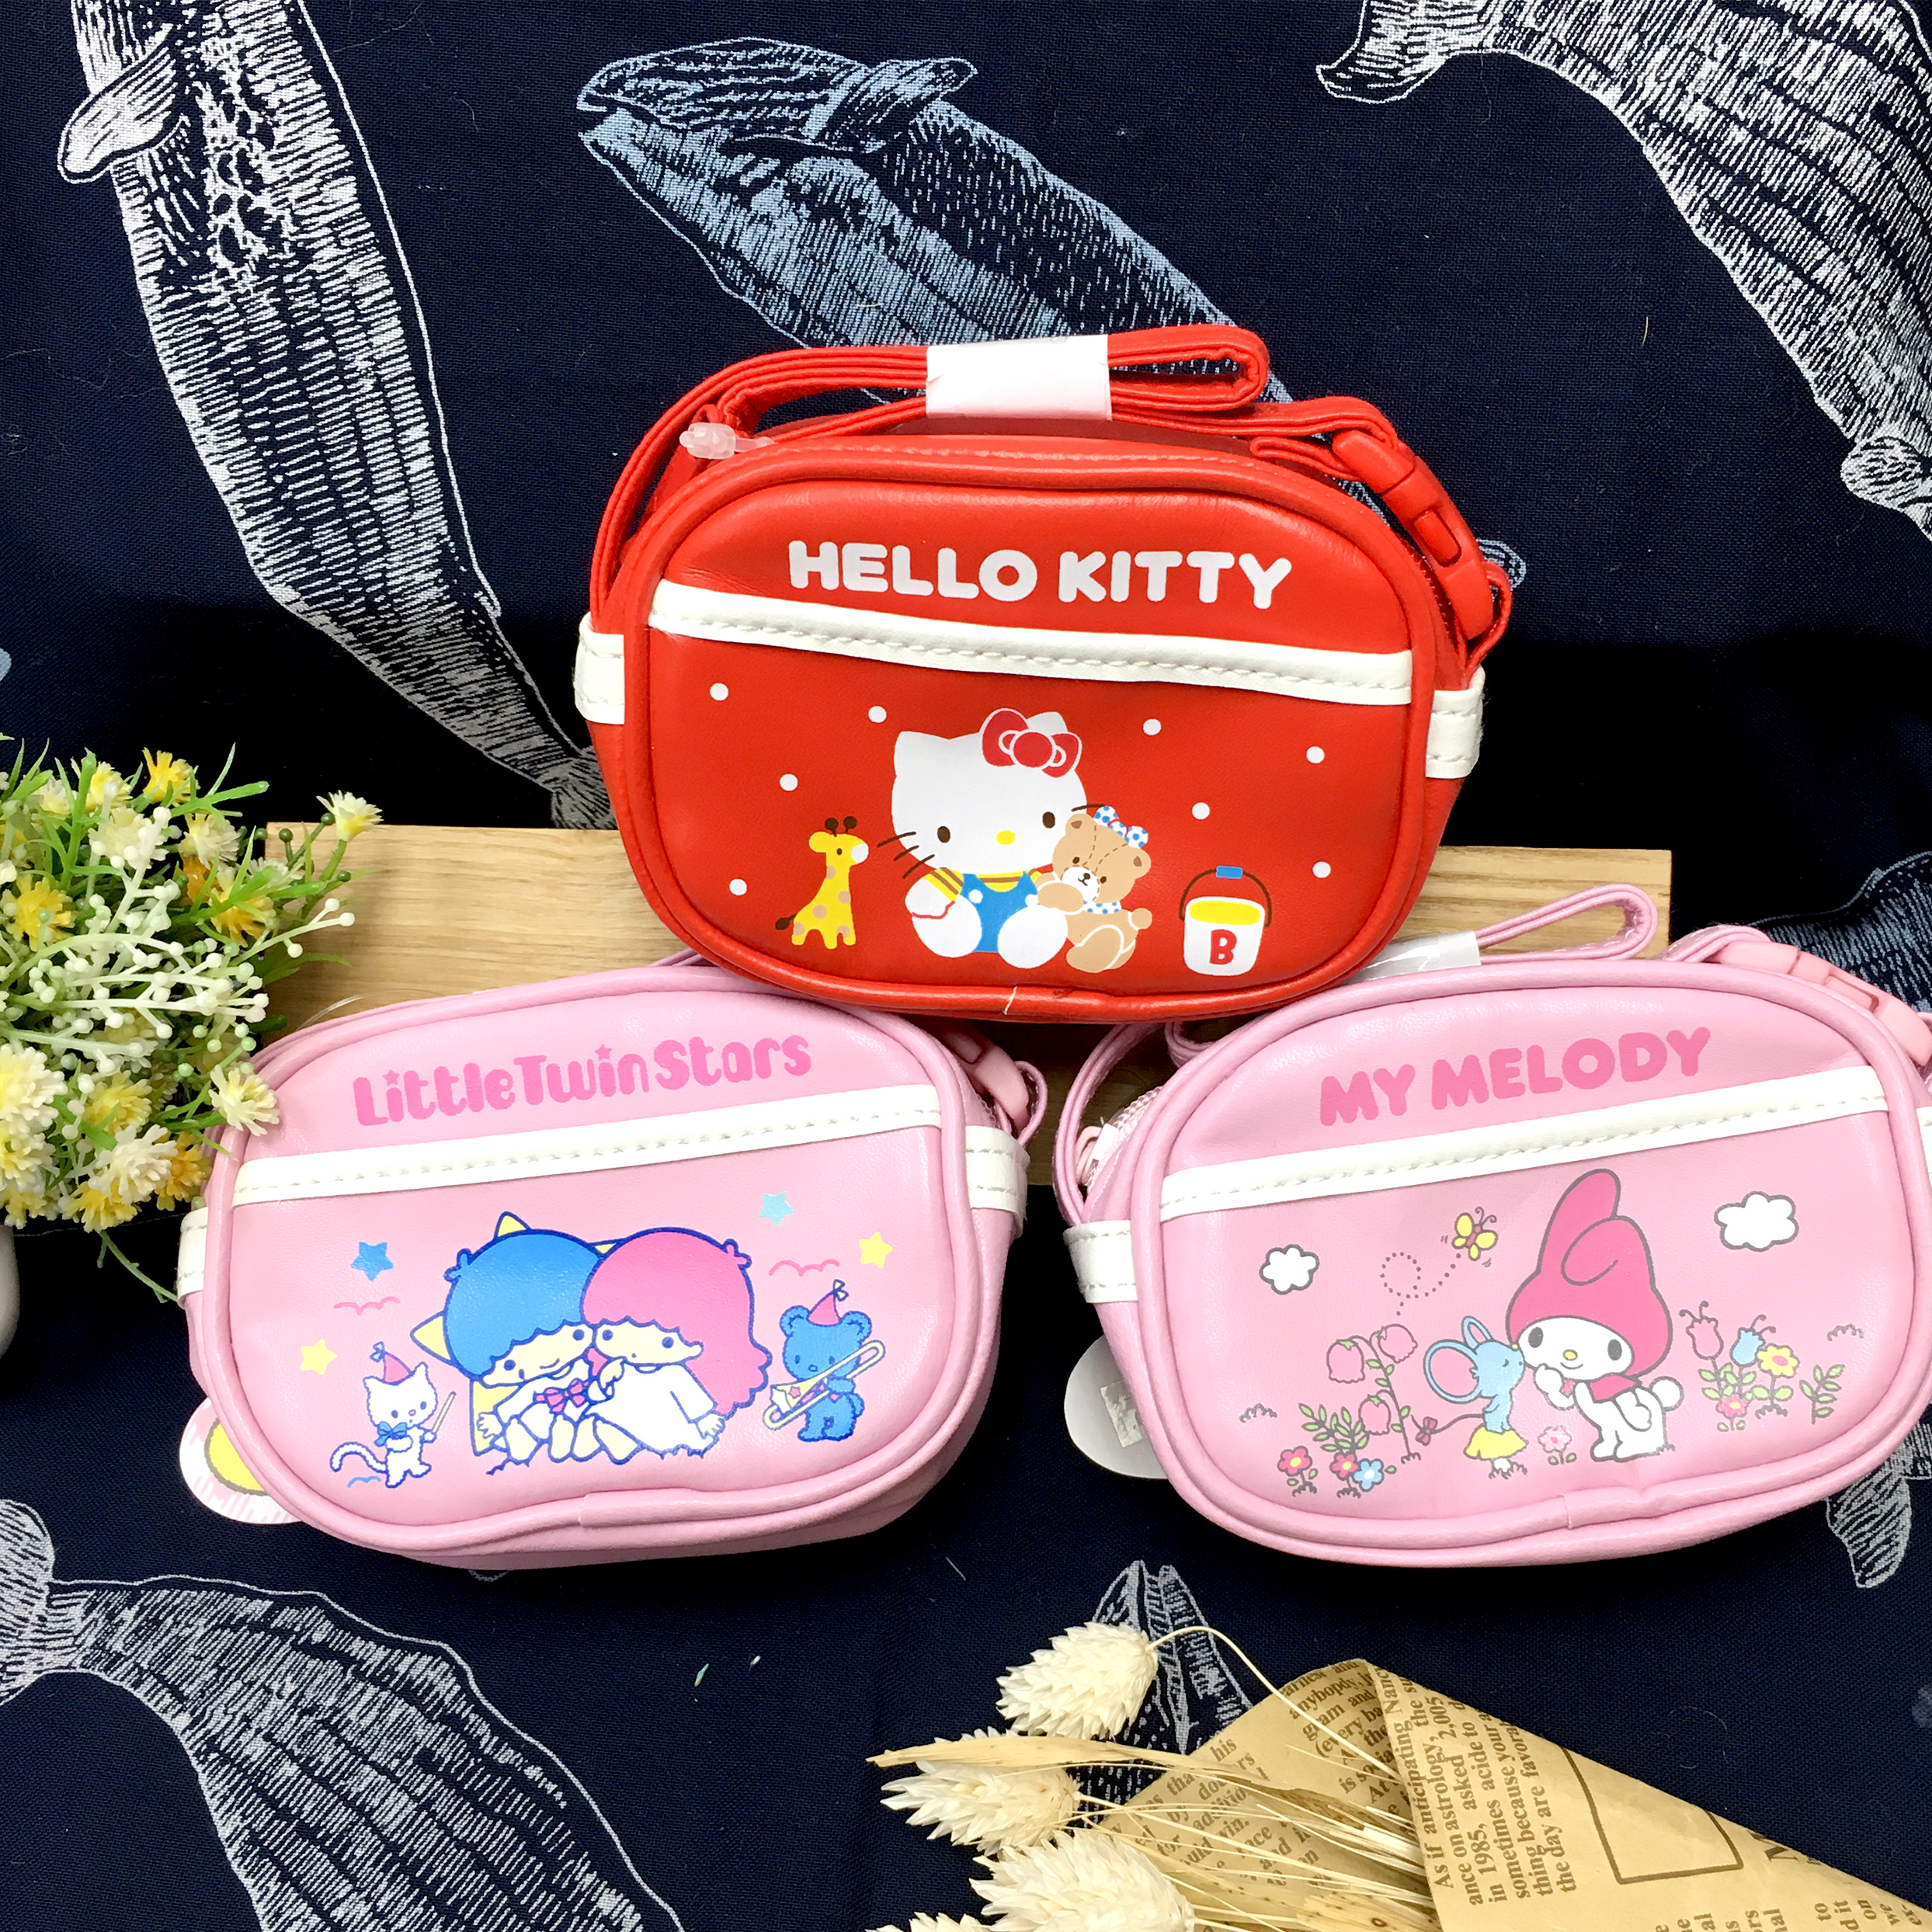 迷你零錢提包 三麗鷗 Hello Kitty 美樂蒂 雙子星 3款  皮革 萬用包 附提帶 日本進口正版授權